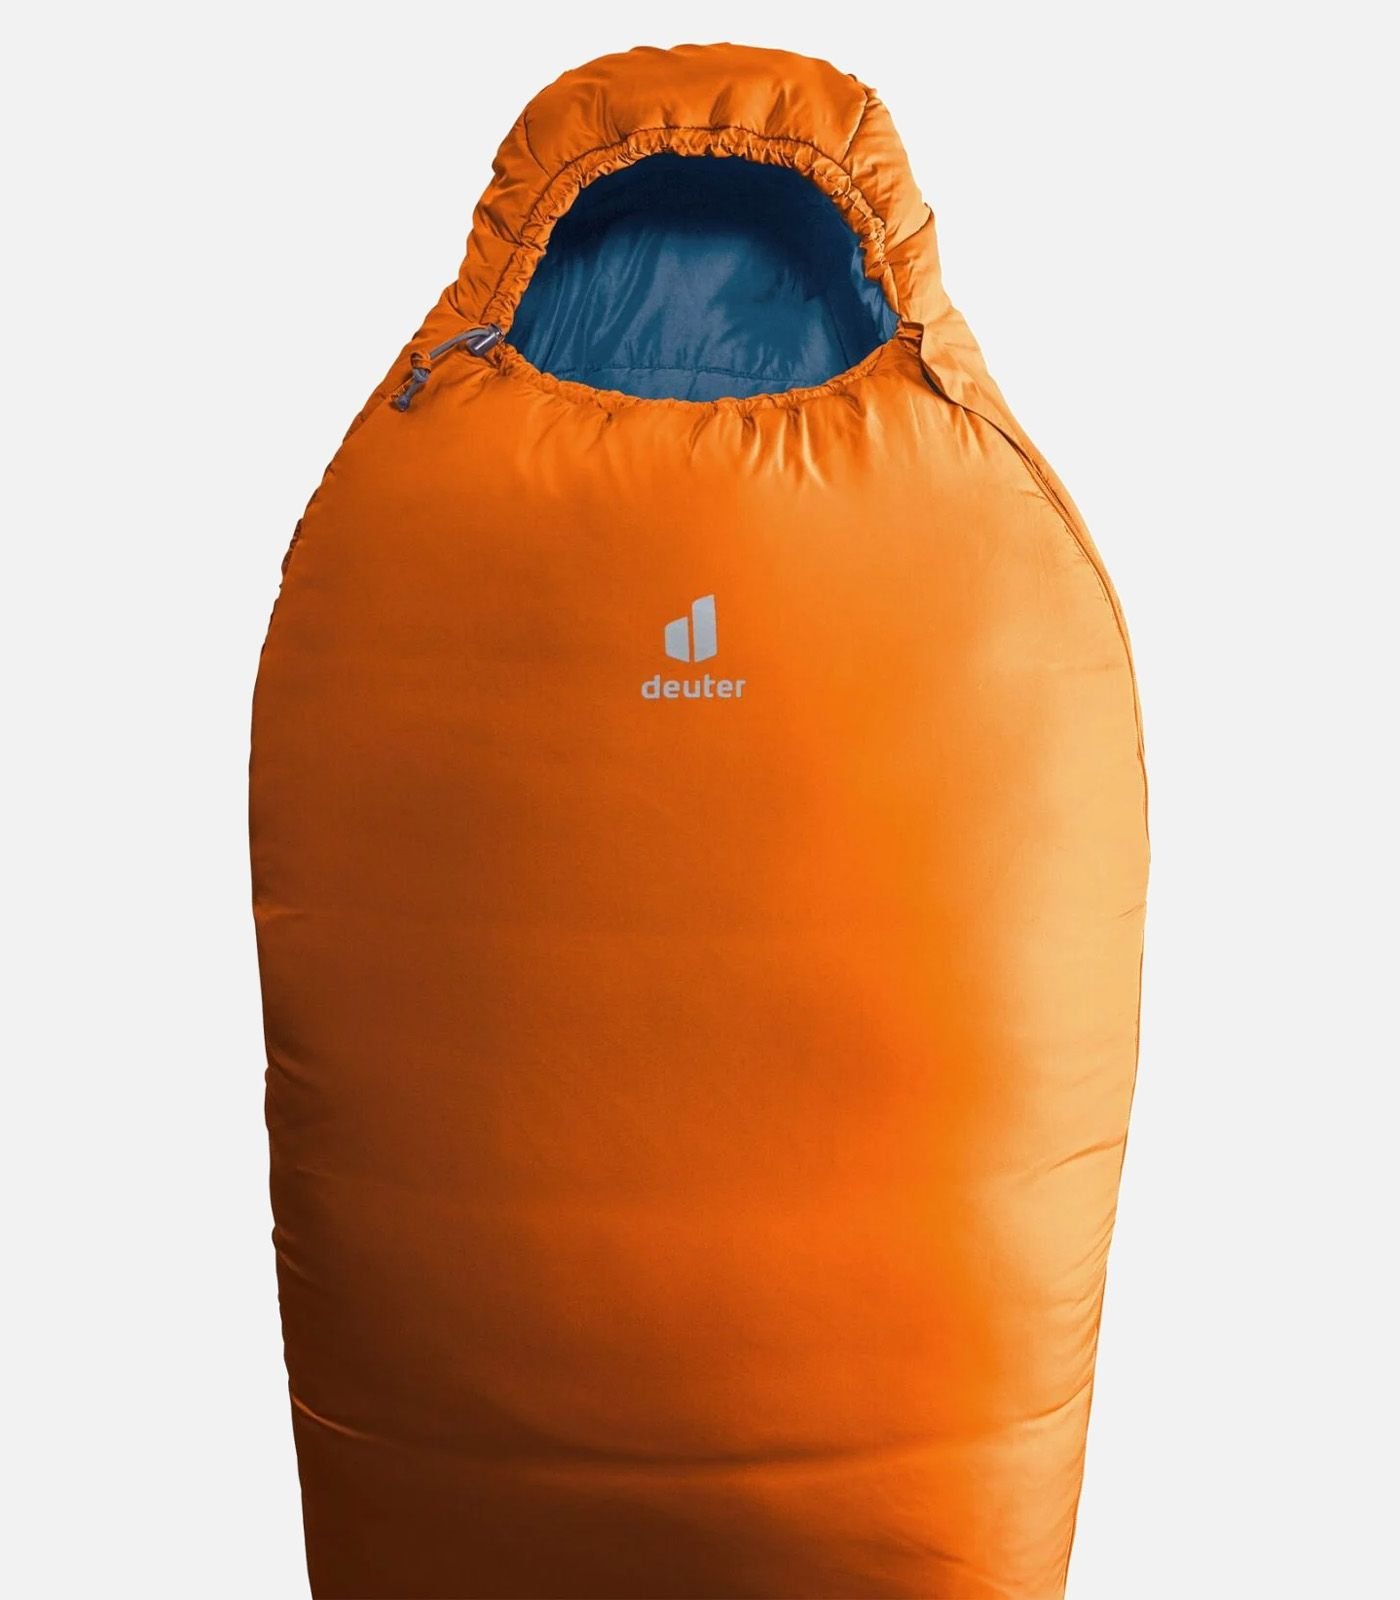 DEUTER Orbit -5° sleeping bag right hand zip